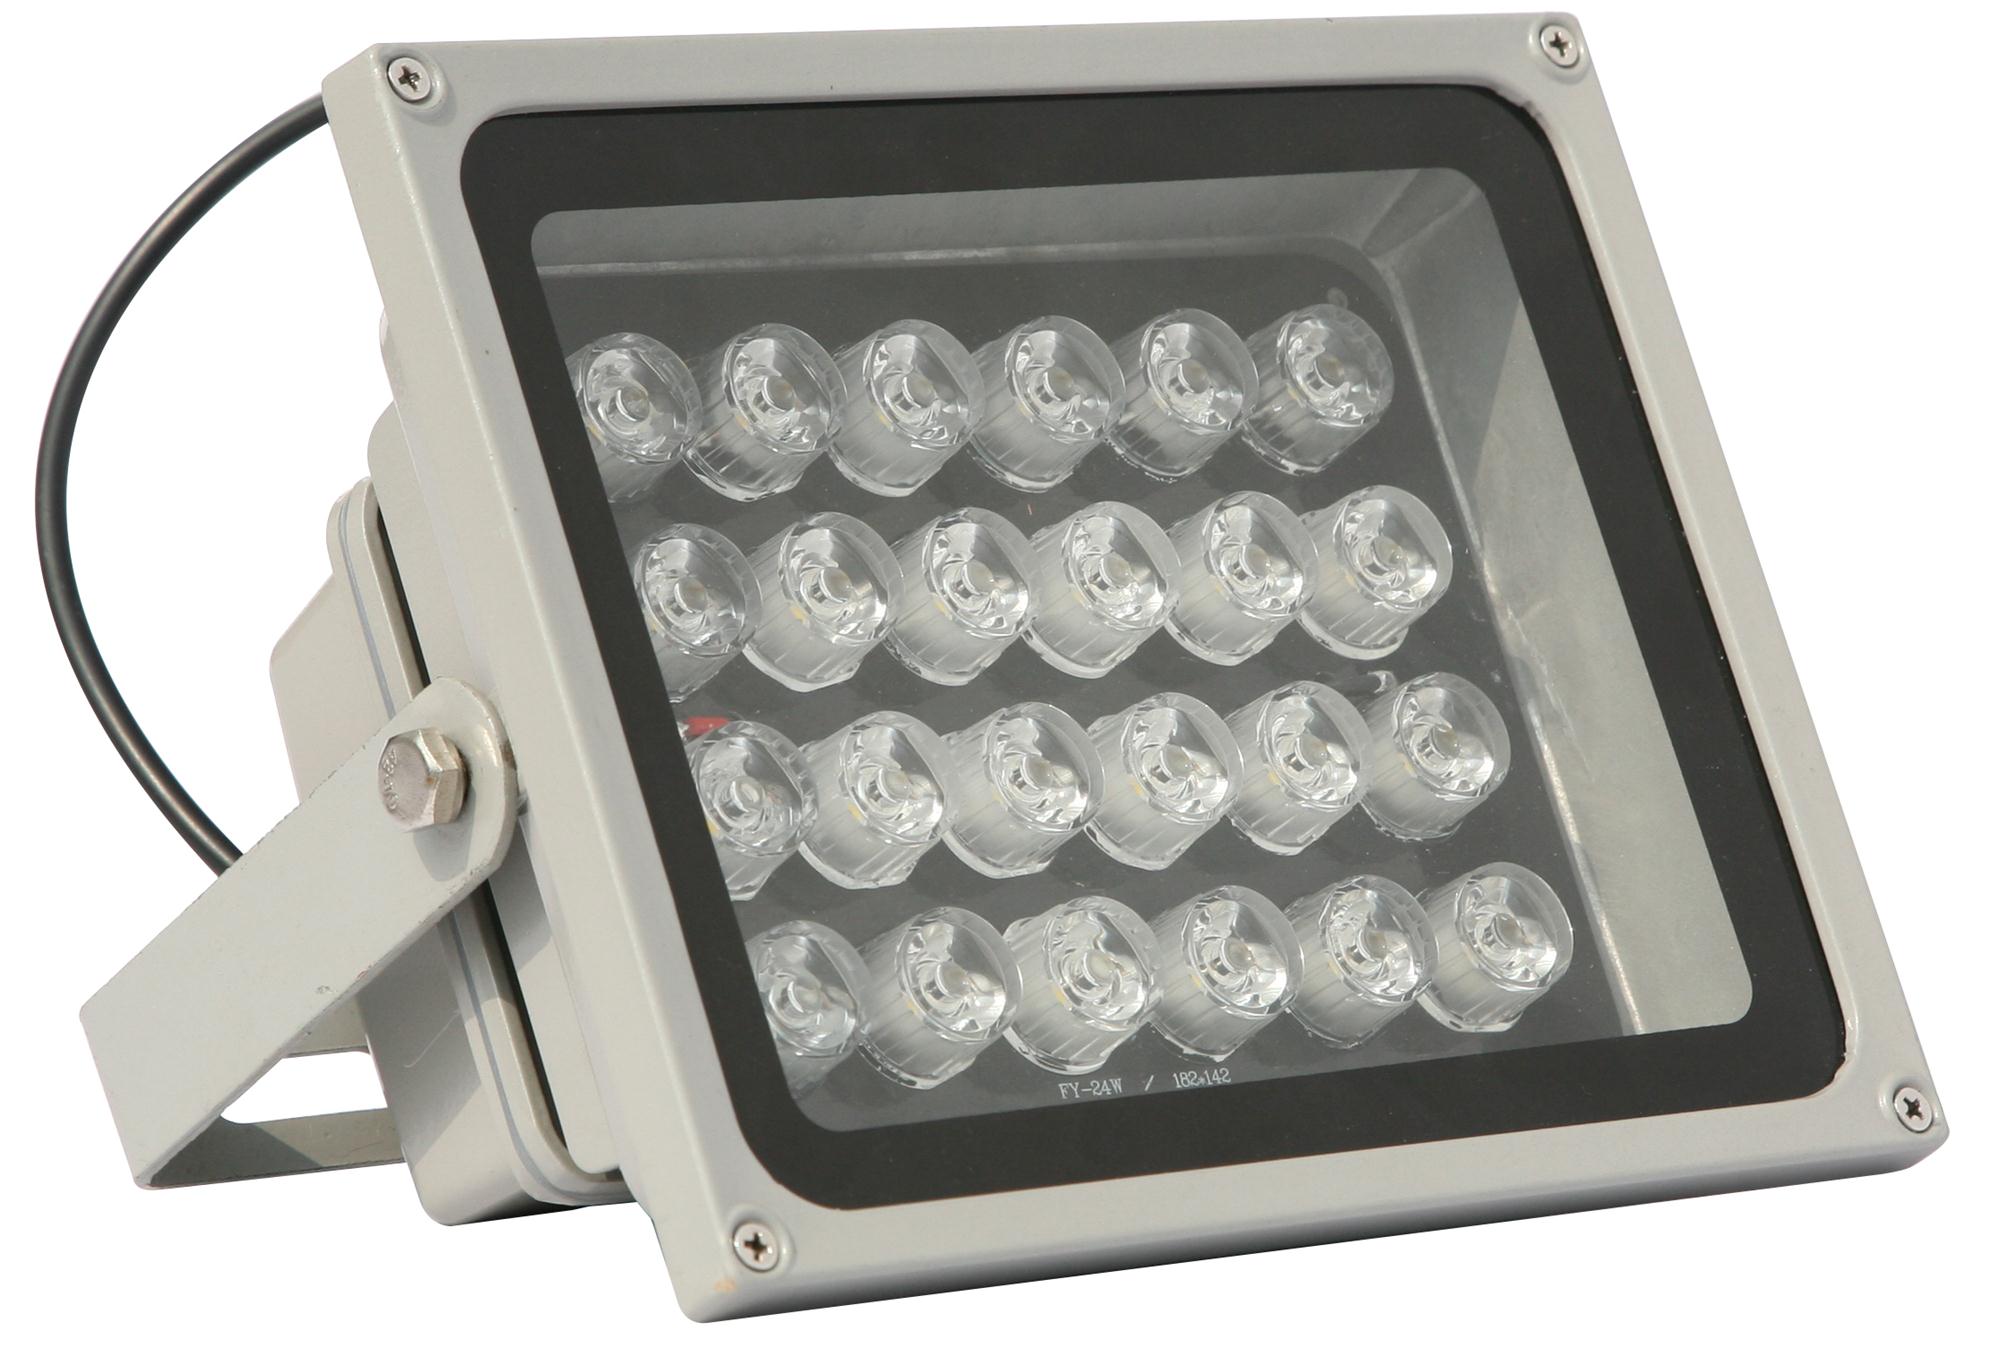 中山雨沺照明讲述大功率LED投光灯在节能减排方面有很大的突破